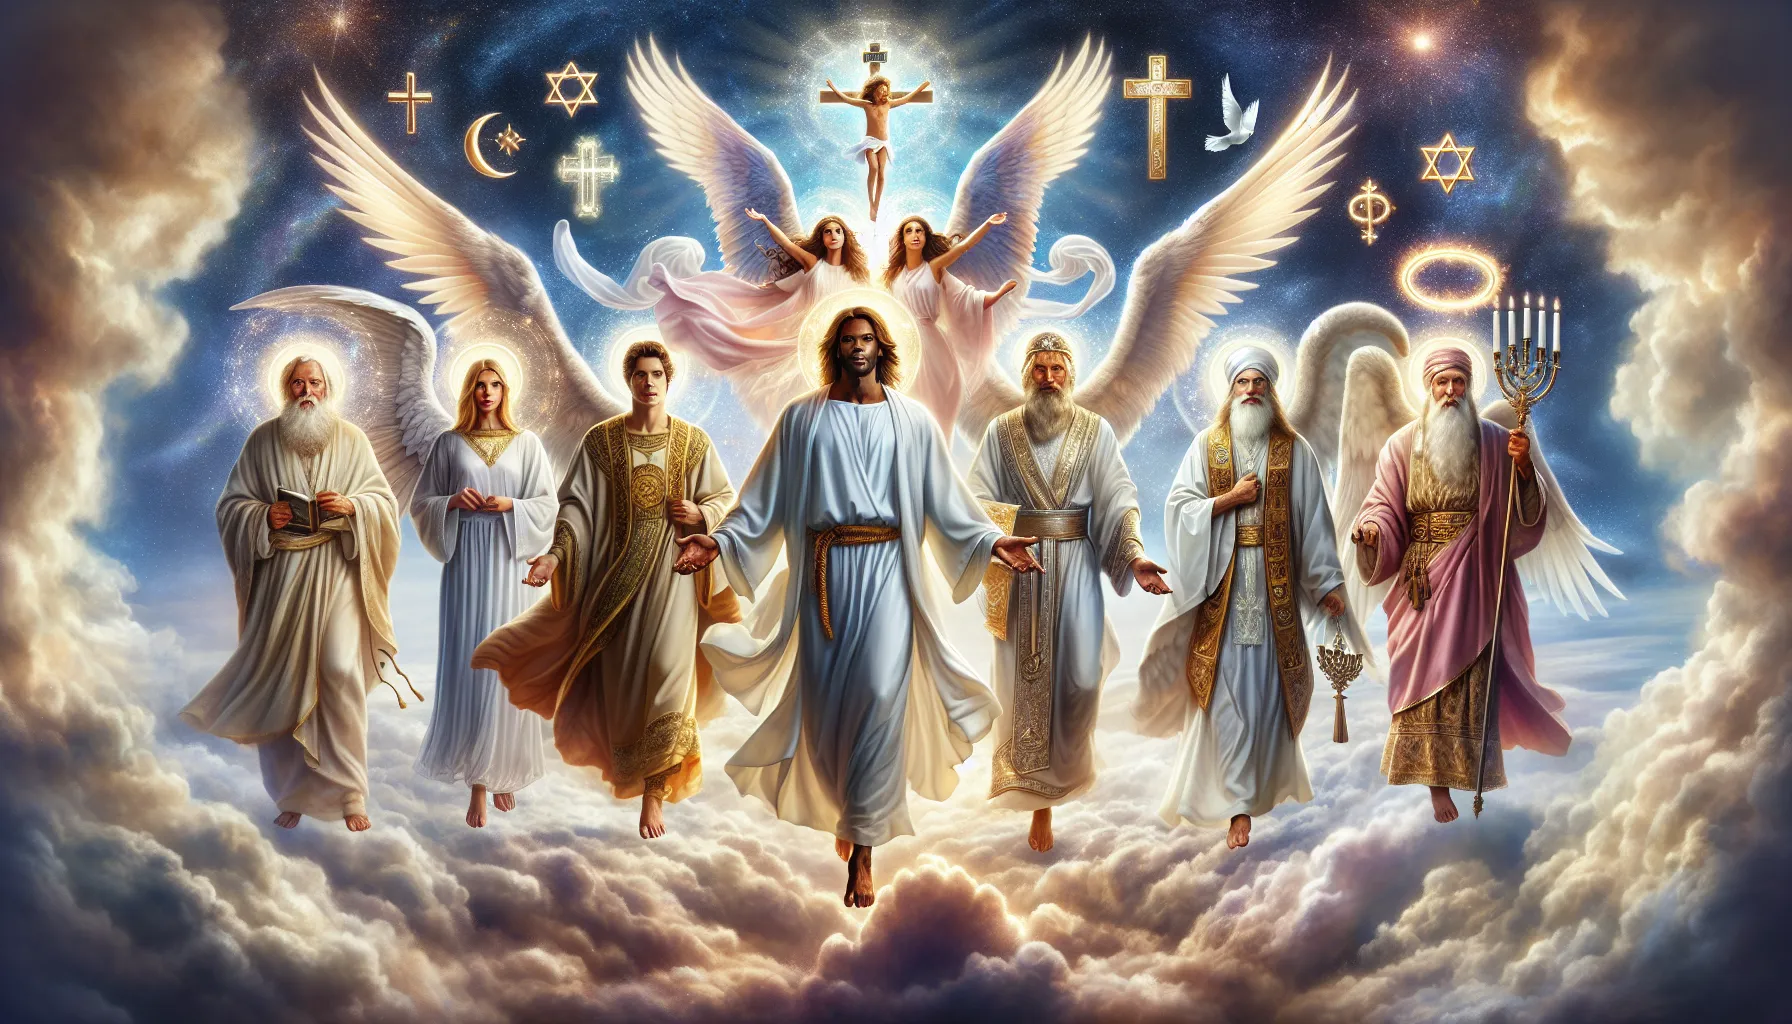 Imagen ilustrativa de la representación de los Principados y Potestades en la Biblia, con figuras angelicales y símbolos religiosos.